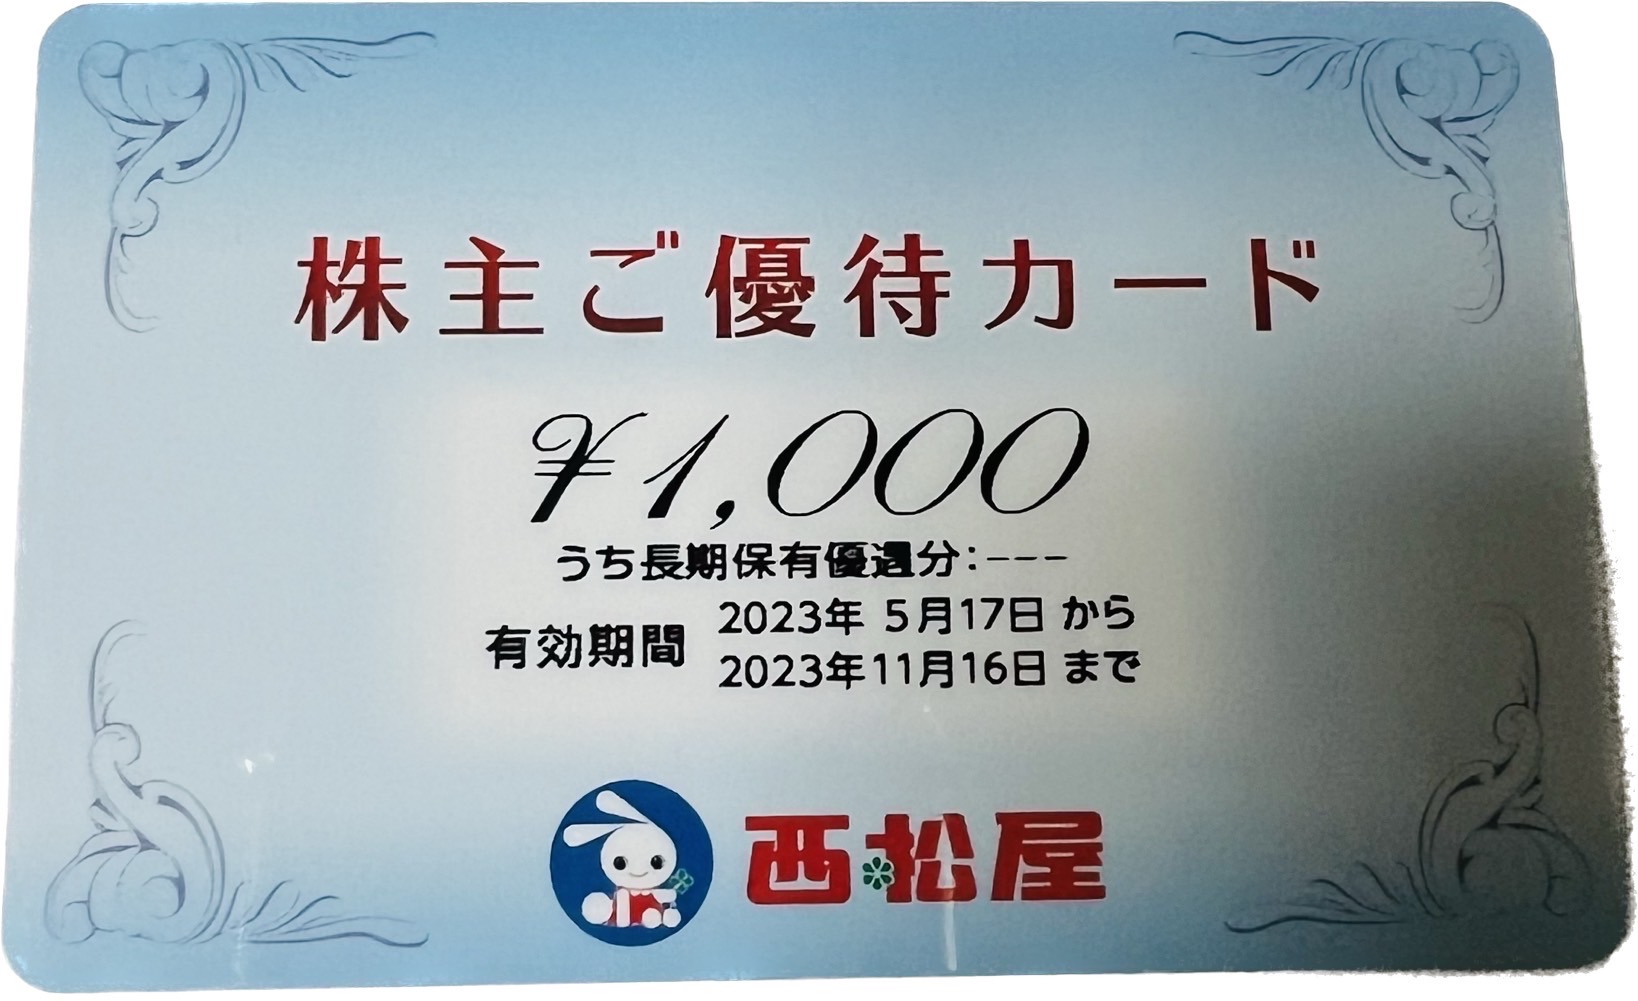 西松屋 株主優待 24000円優待券/割引券